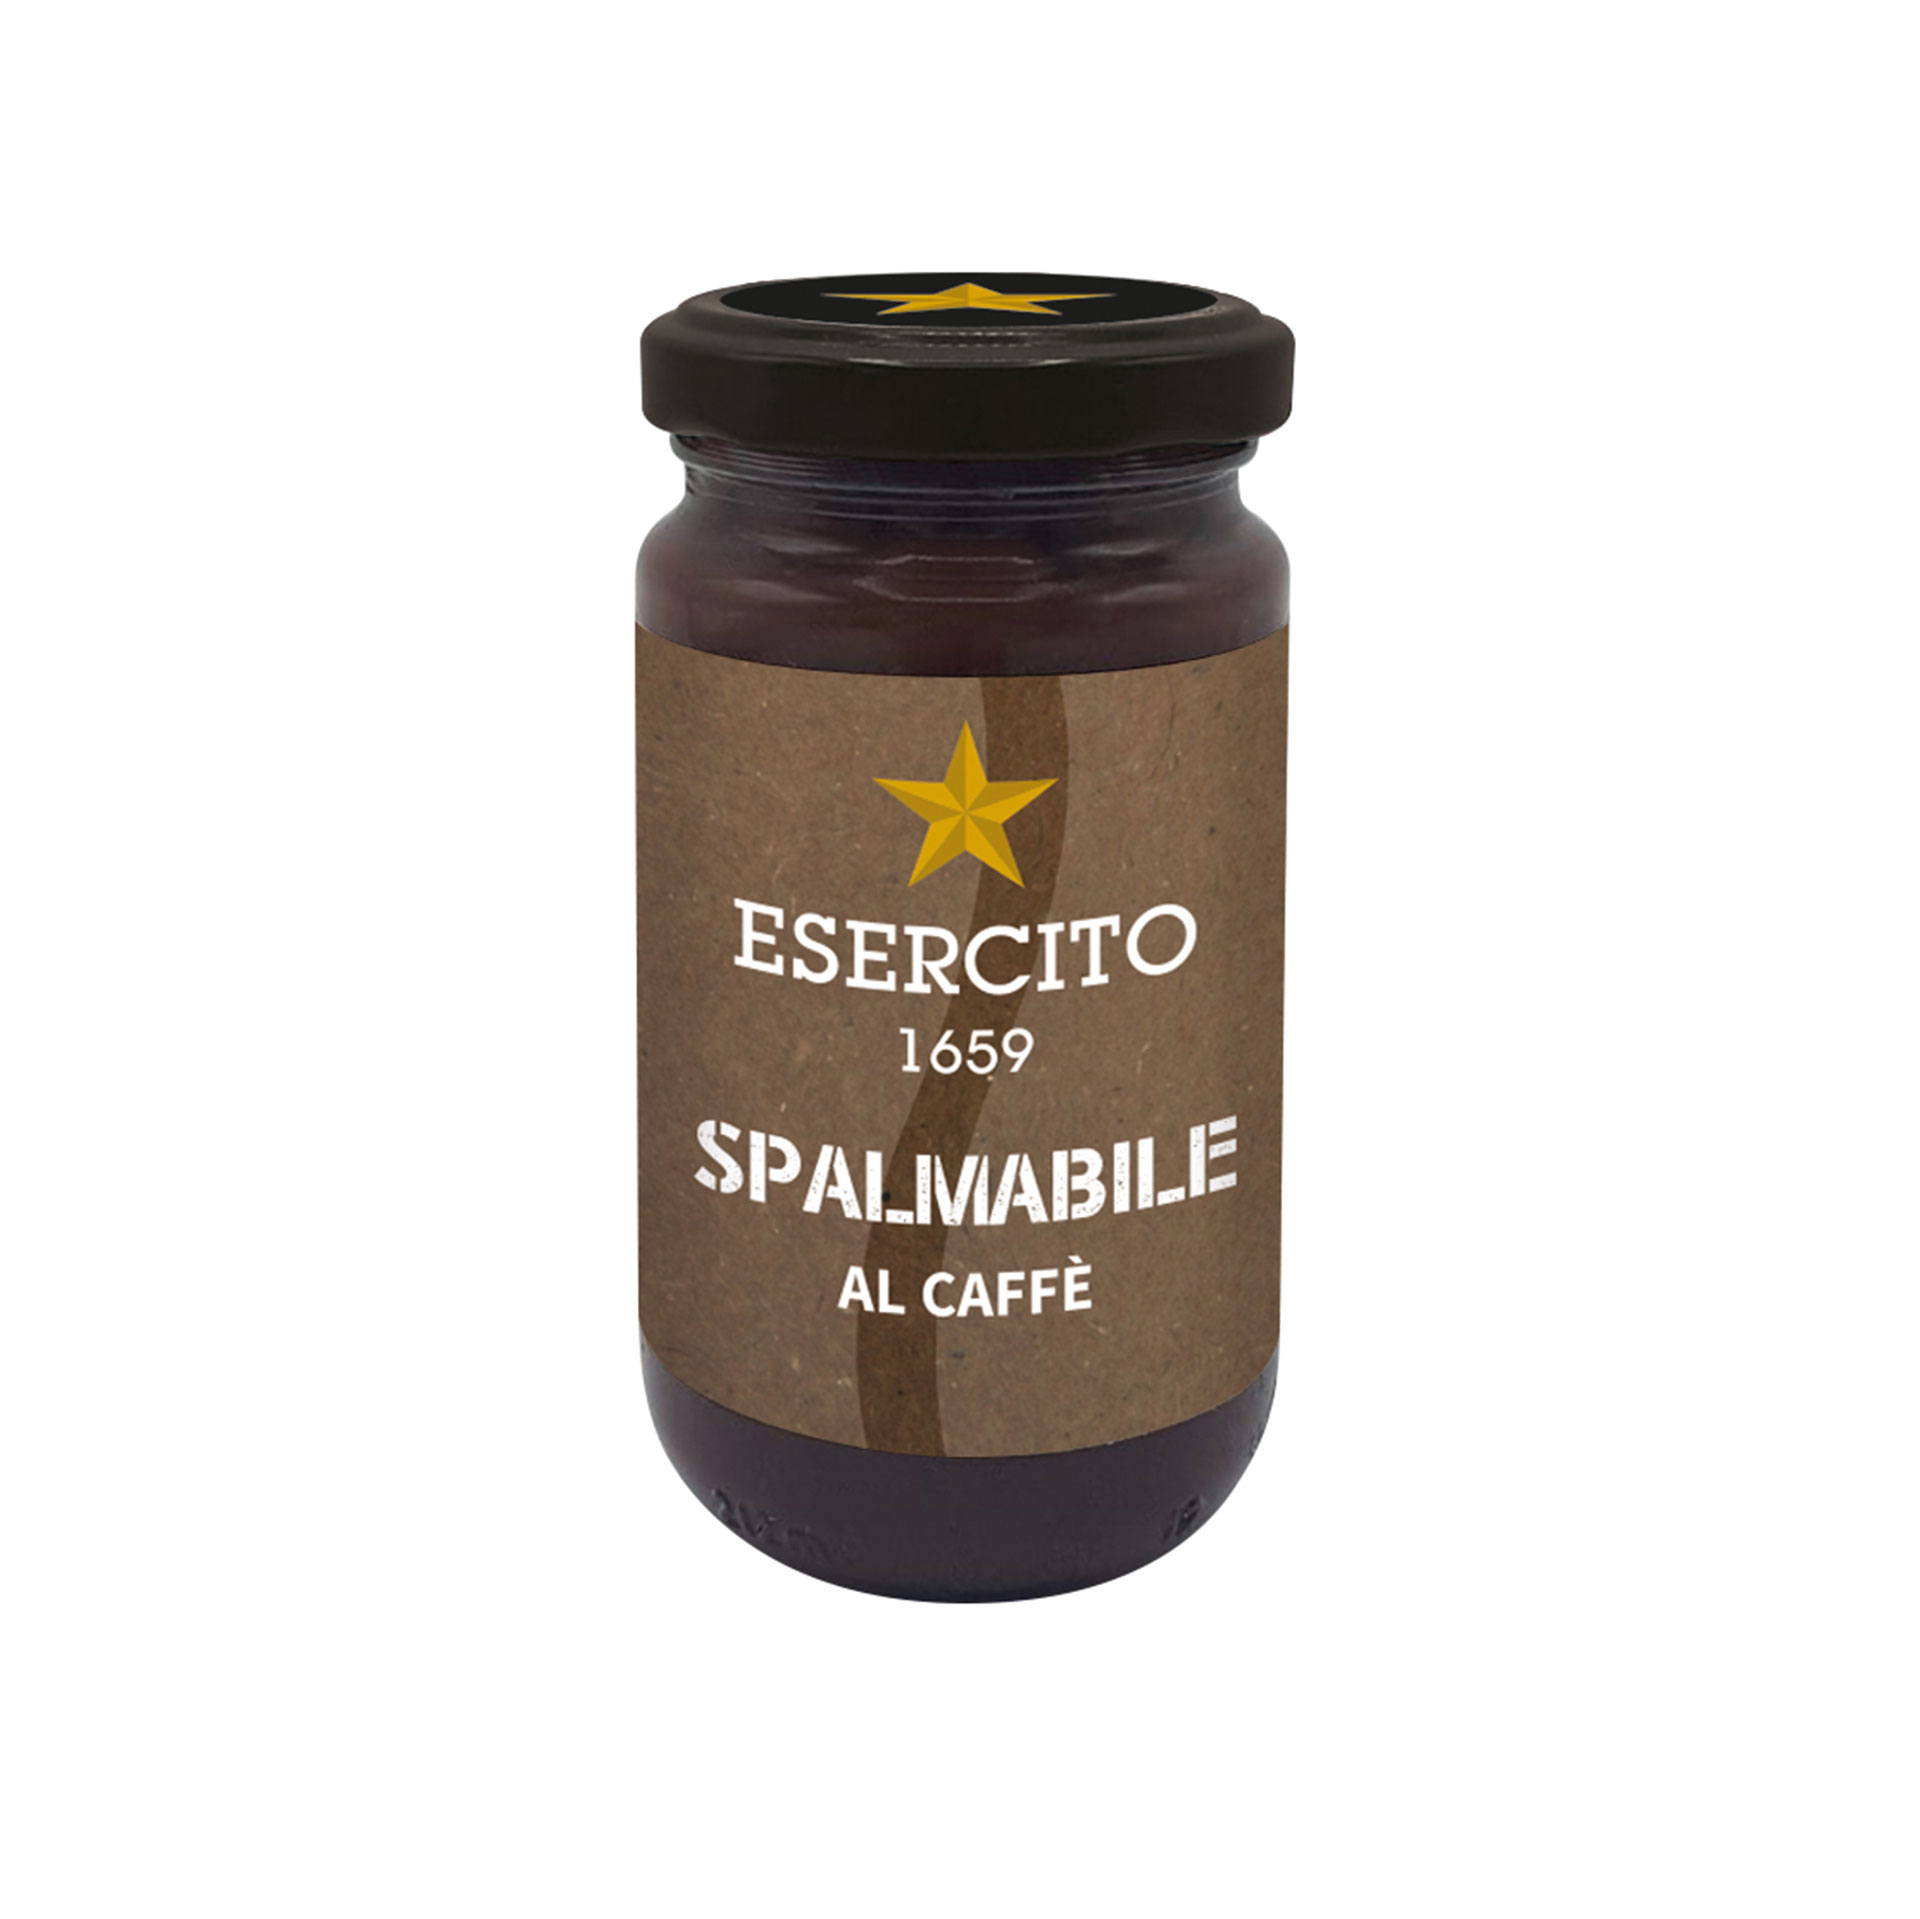 CREMA SPALMABILE AL CAFFE' 230g ESERCITO 1659